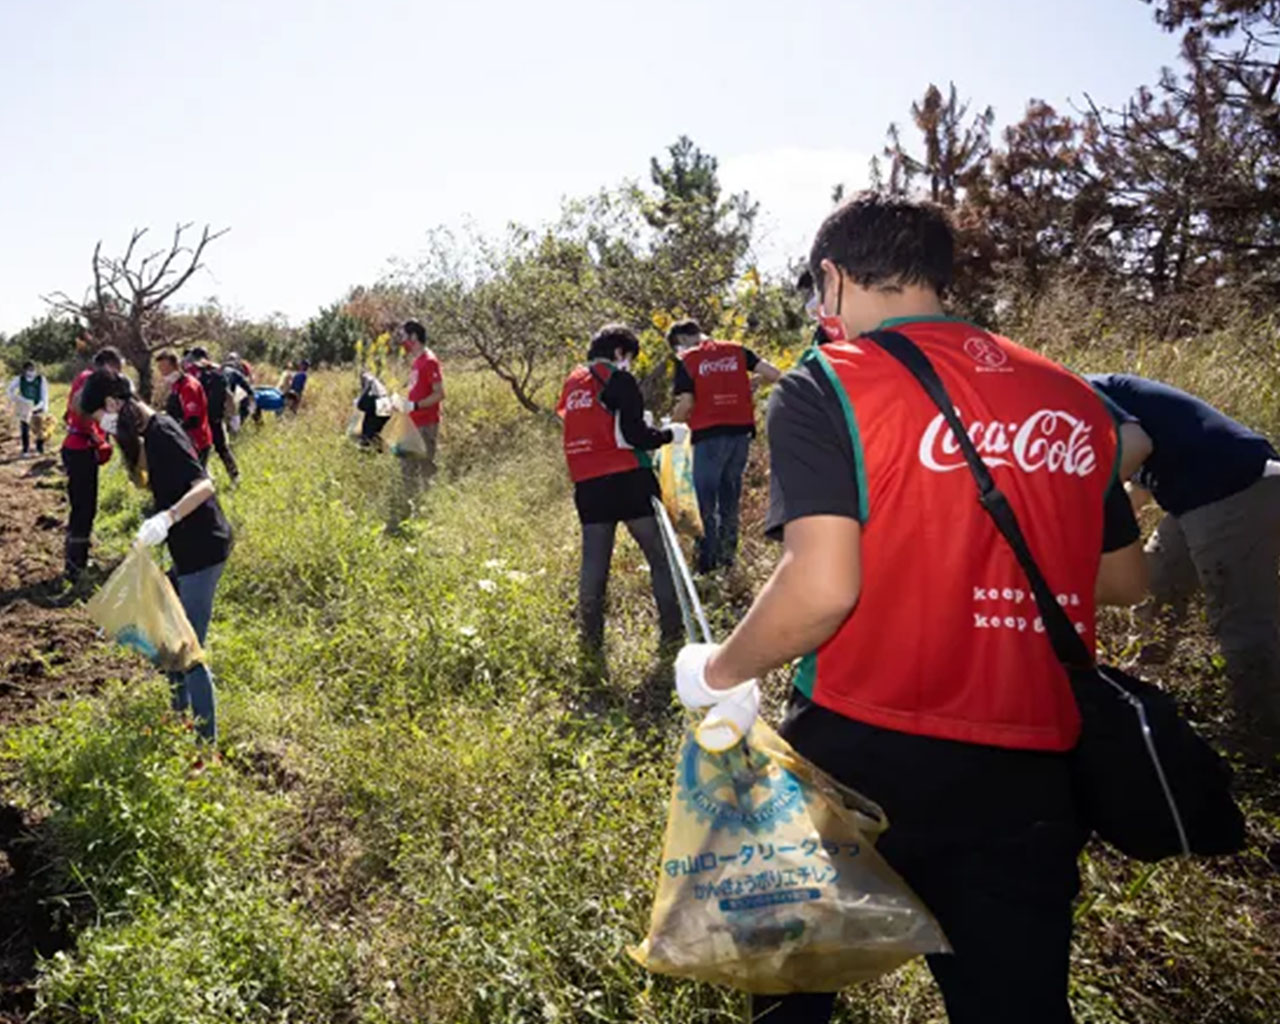 コカ・コーラの赤いベストを着用して清掃ボランティア活動をする人々